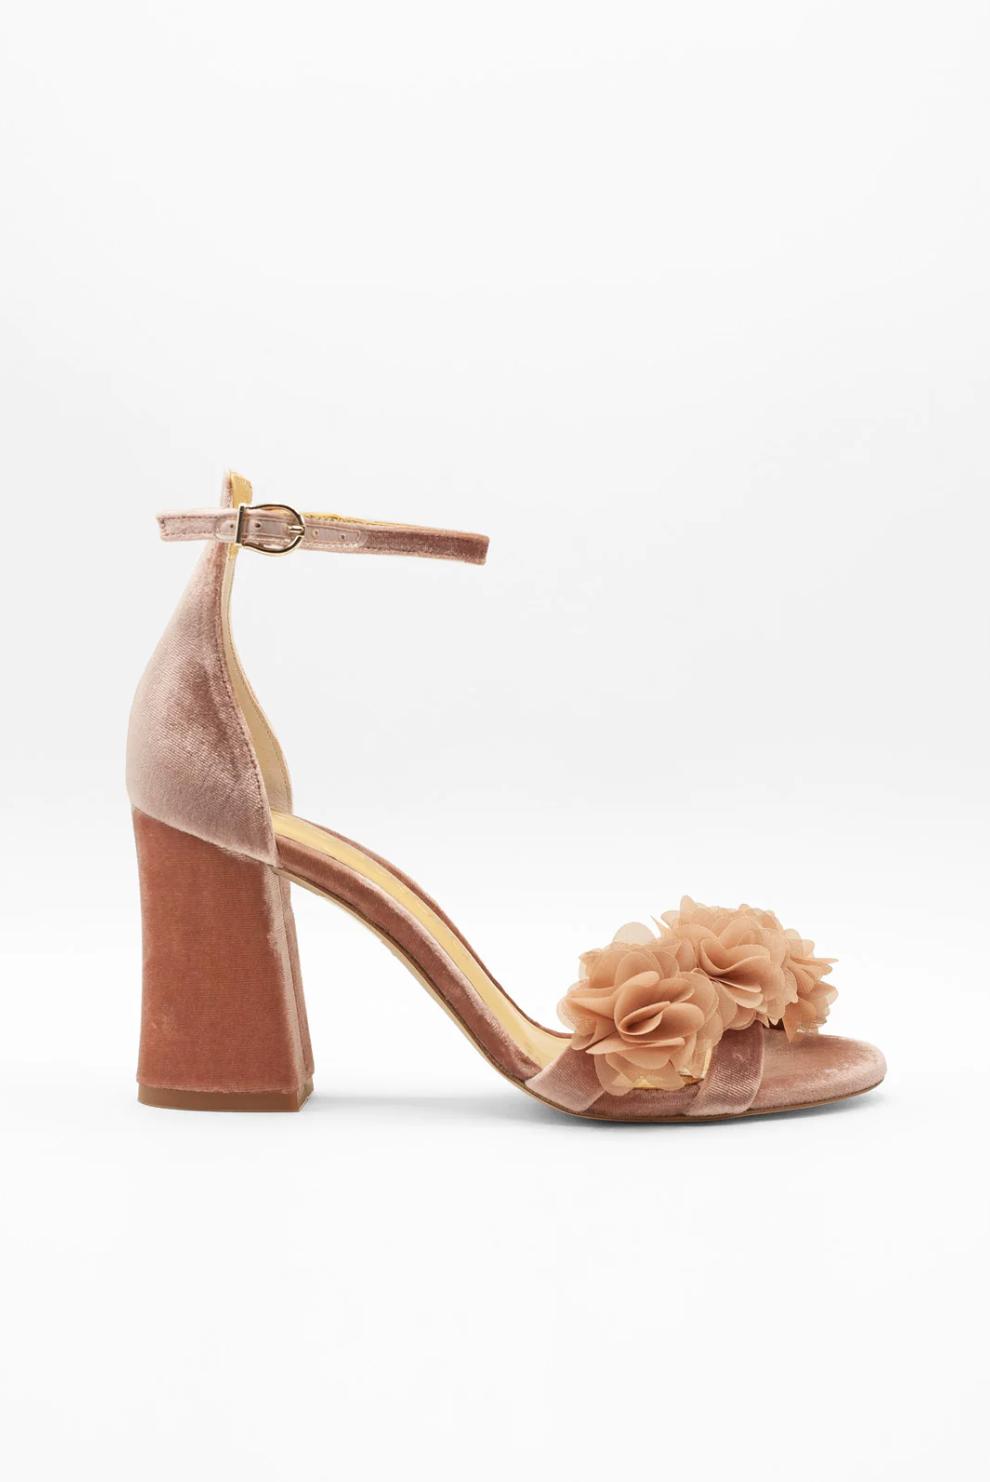 Zapatos de novia rosas con detalle floral en la puntera